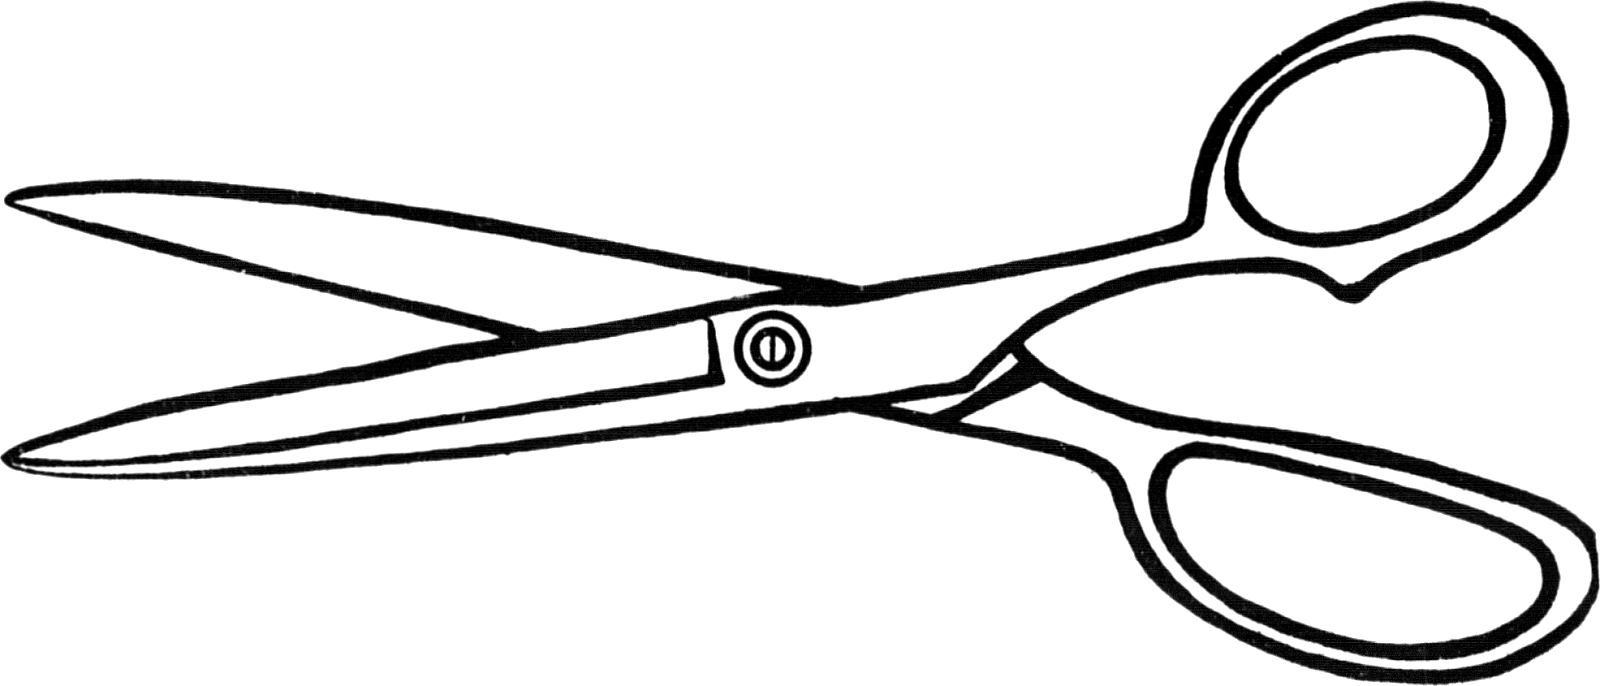 clipart of scissors - photo #49